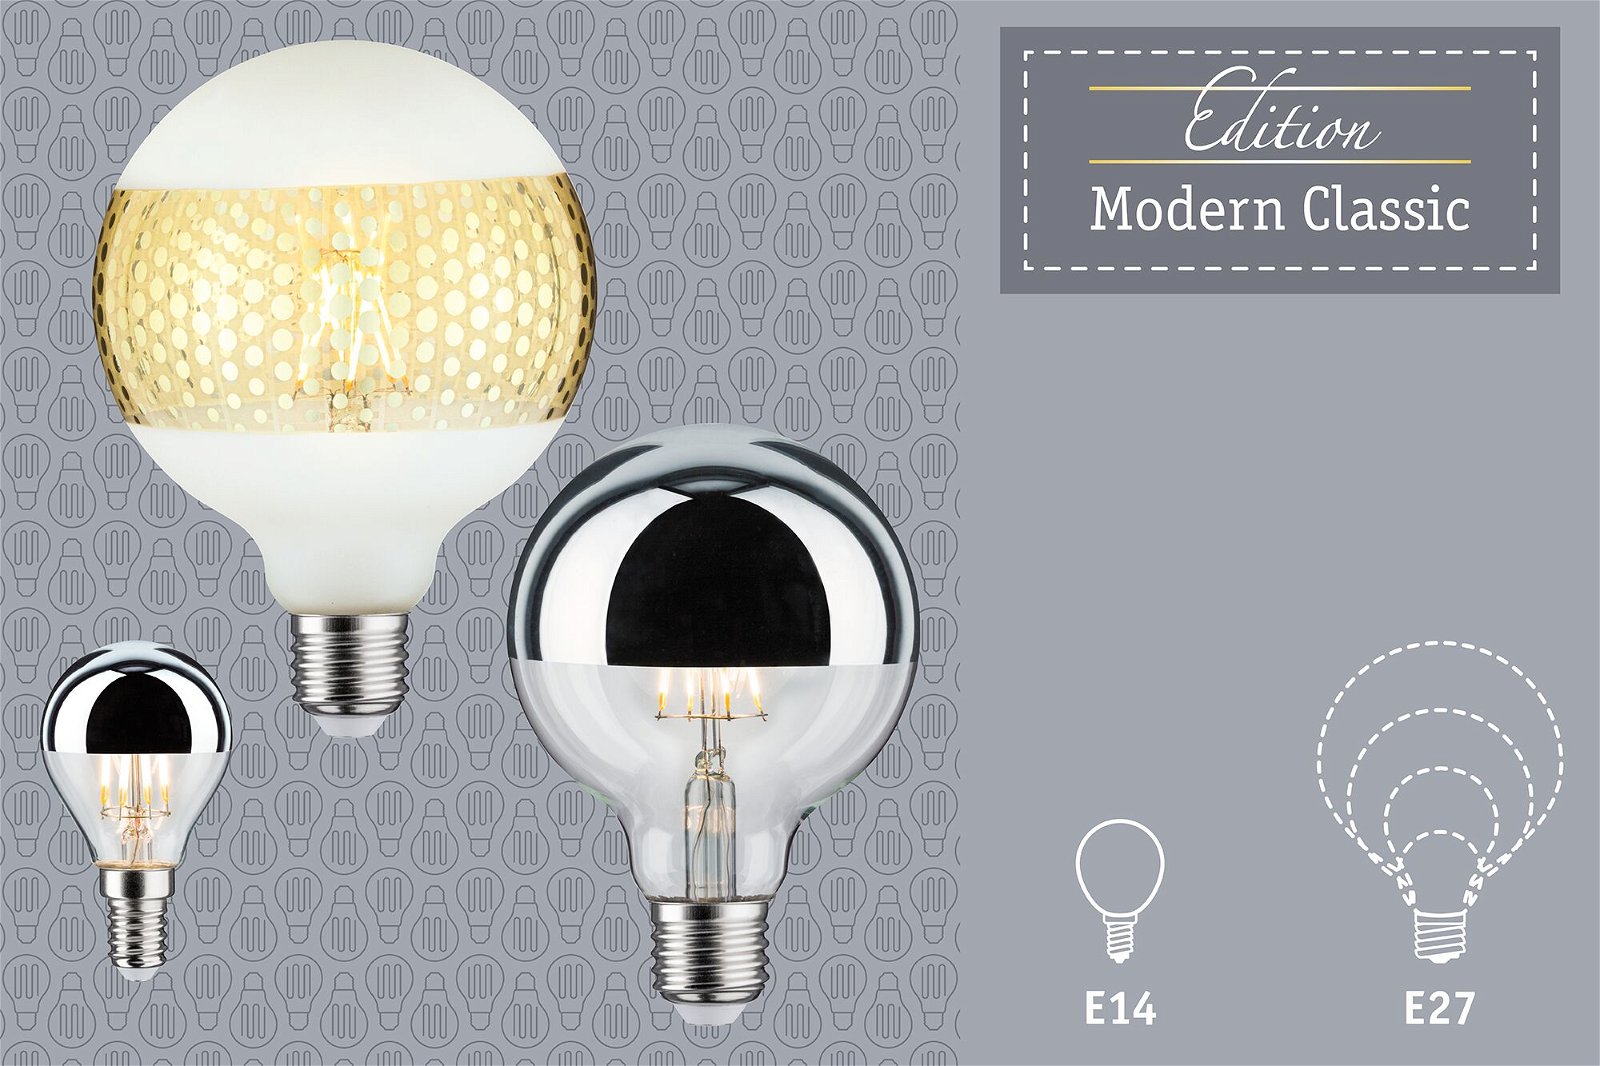 Modern Classic Edition LED Globe Kopfspiegel E27 230V 600lm 6,5W 2700K dimmbar Kopfspiegel Schwarz matt